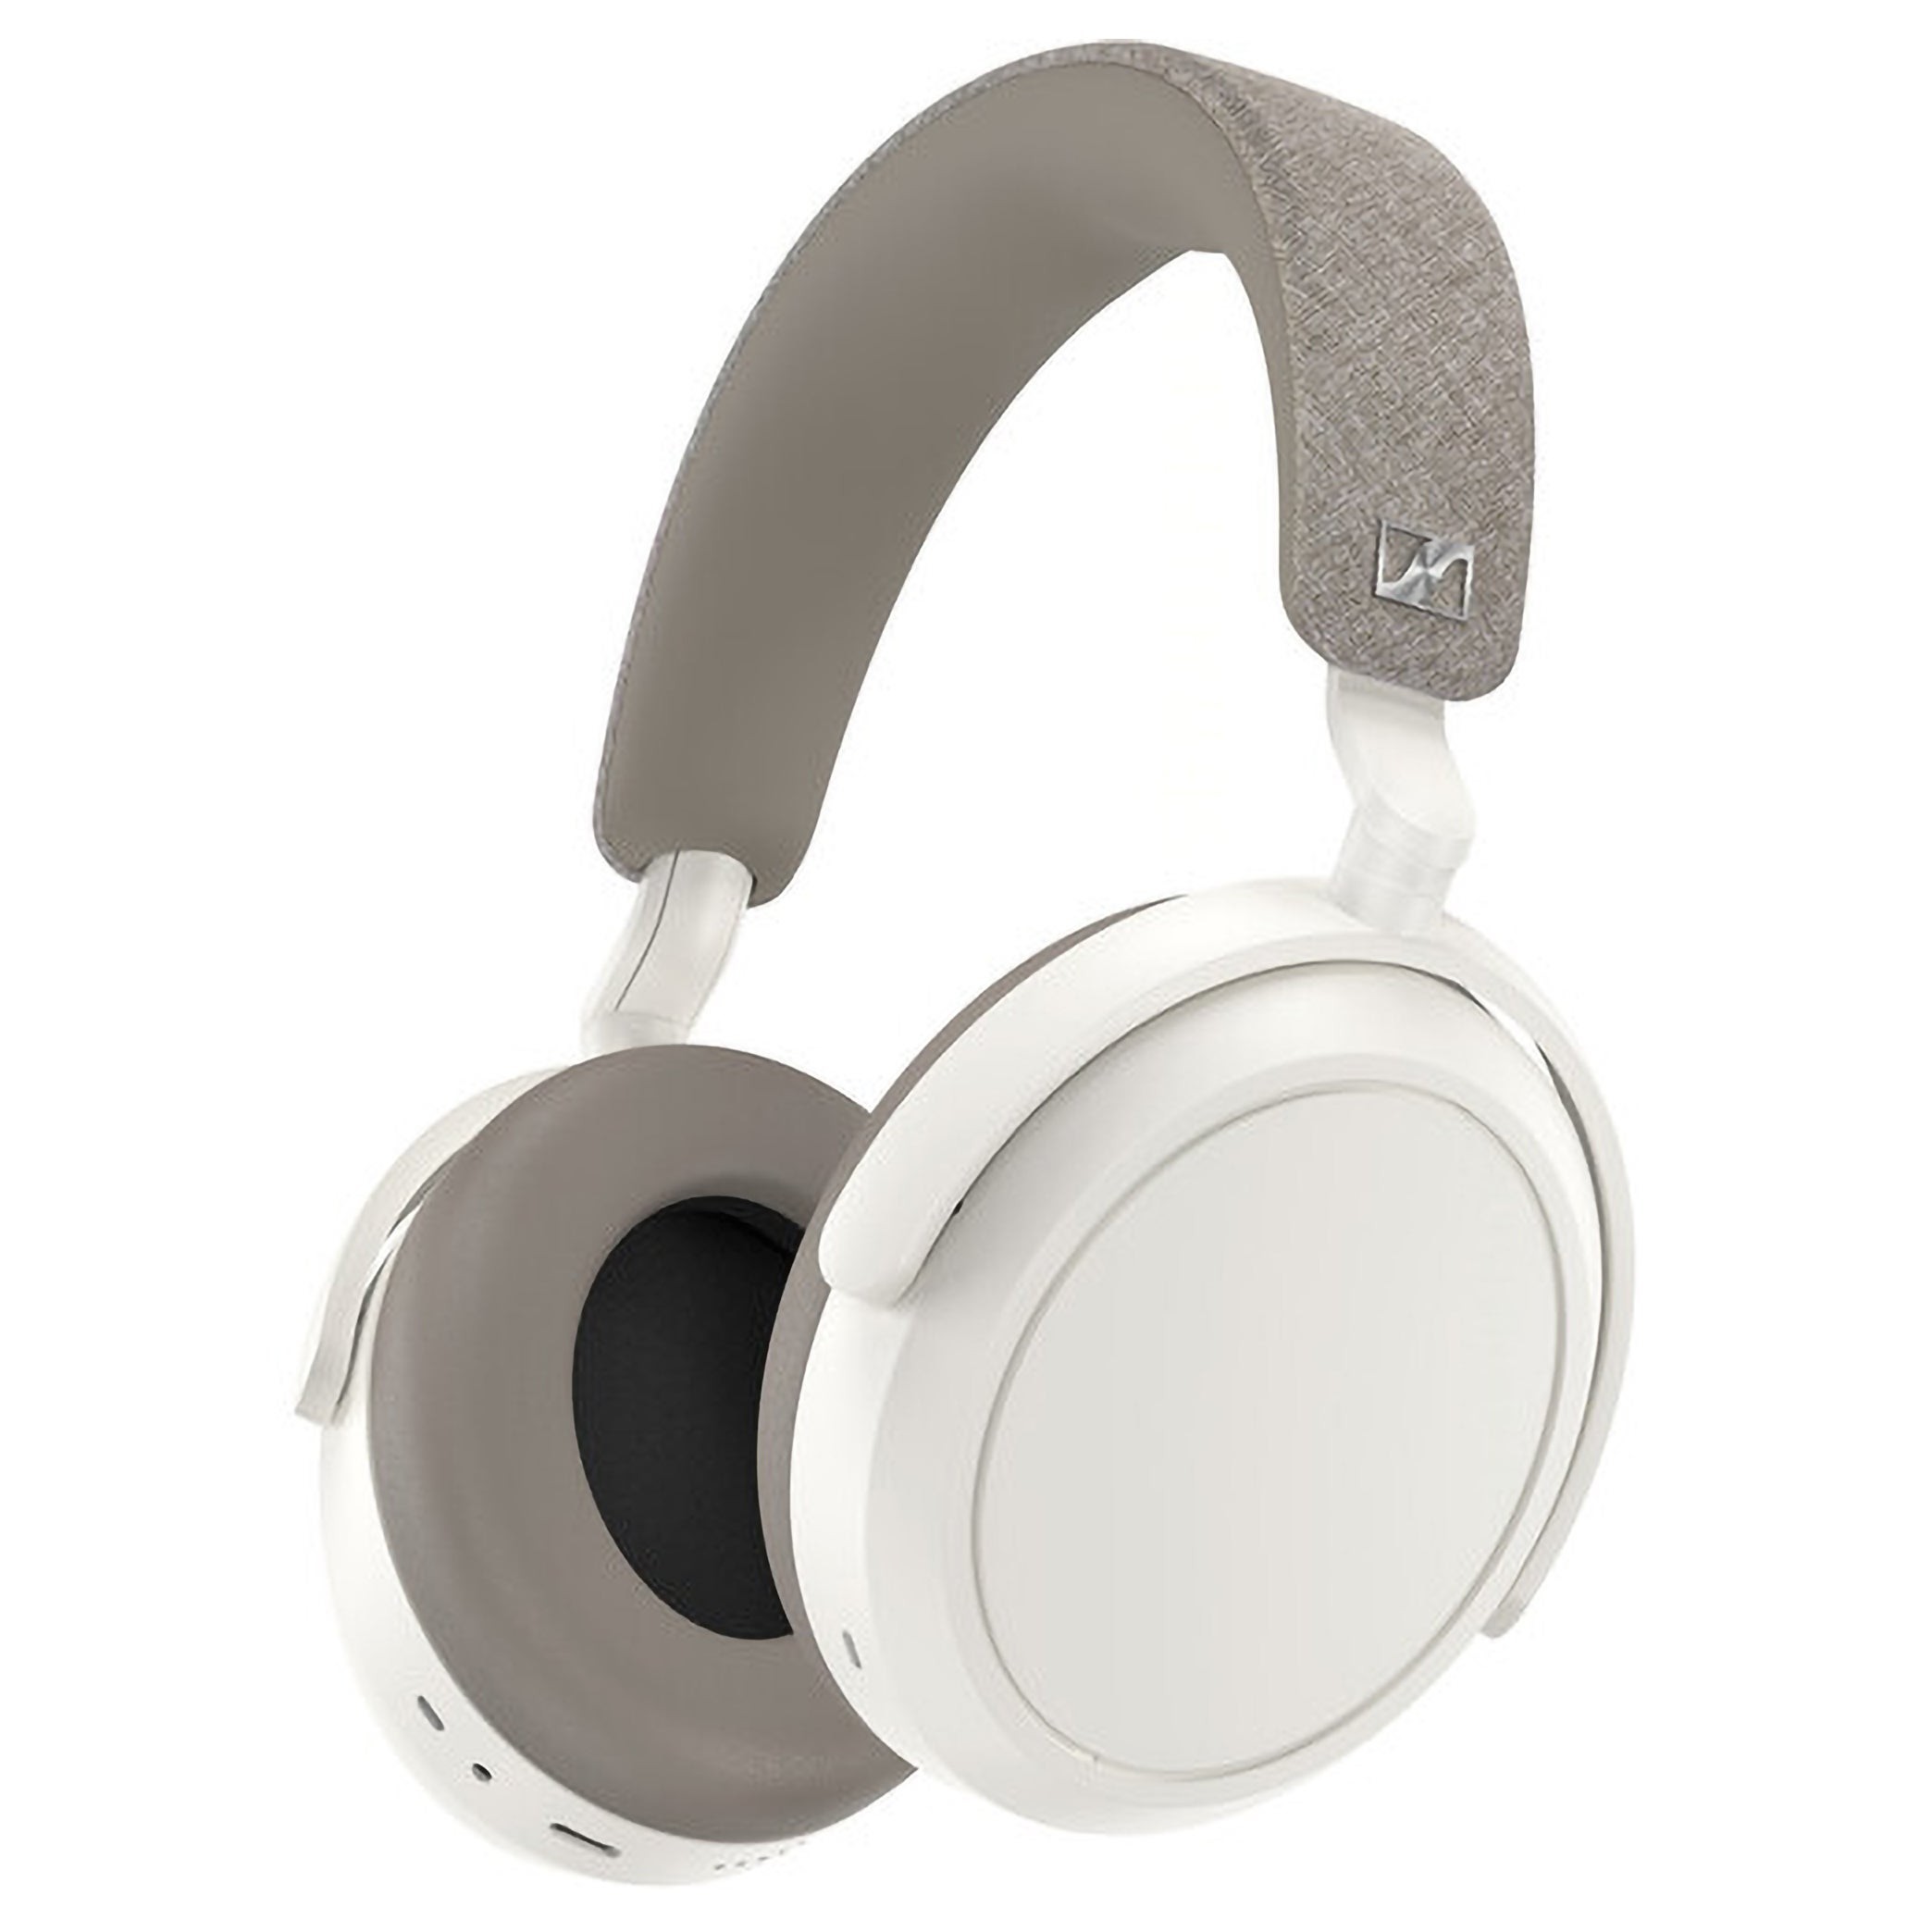 Momentum 4 Wireless Noise Canceling Over-Ear Headphones White